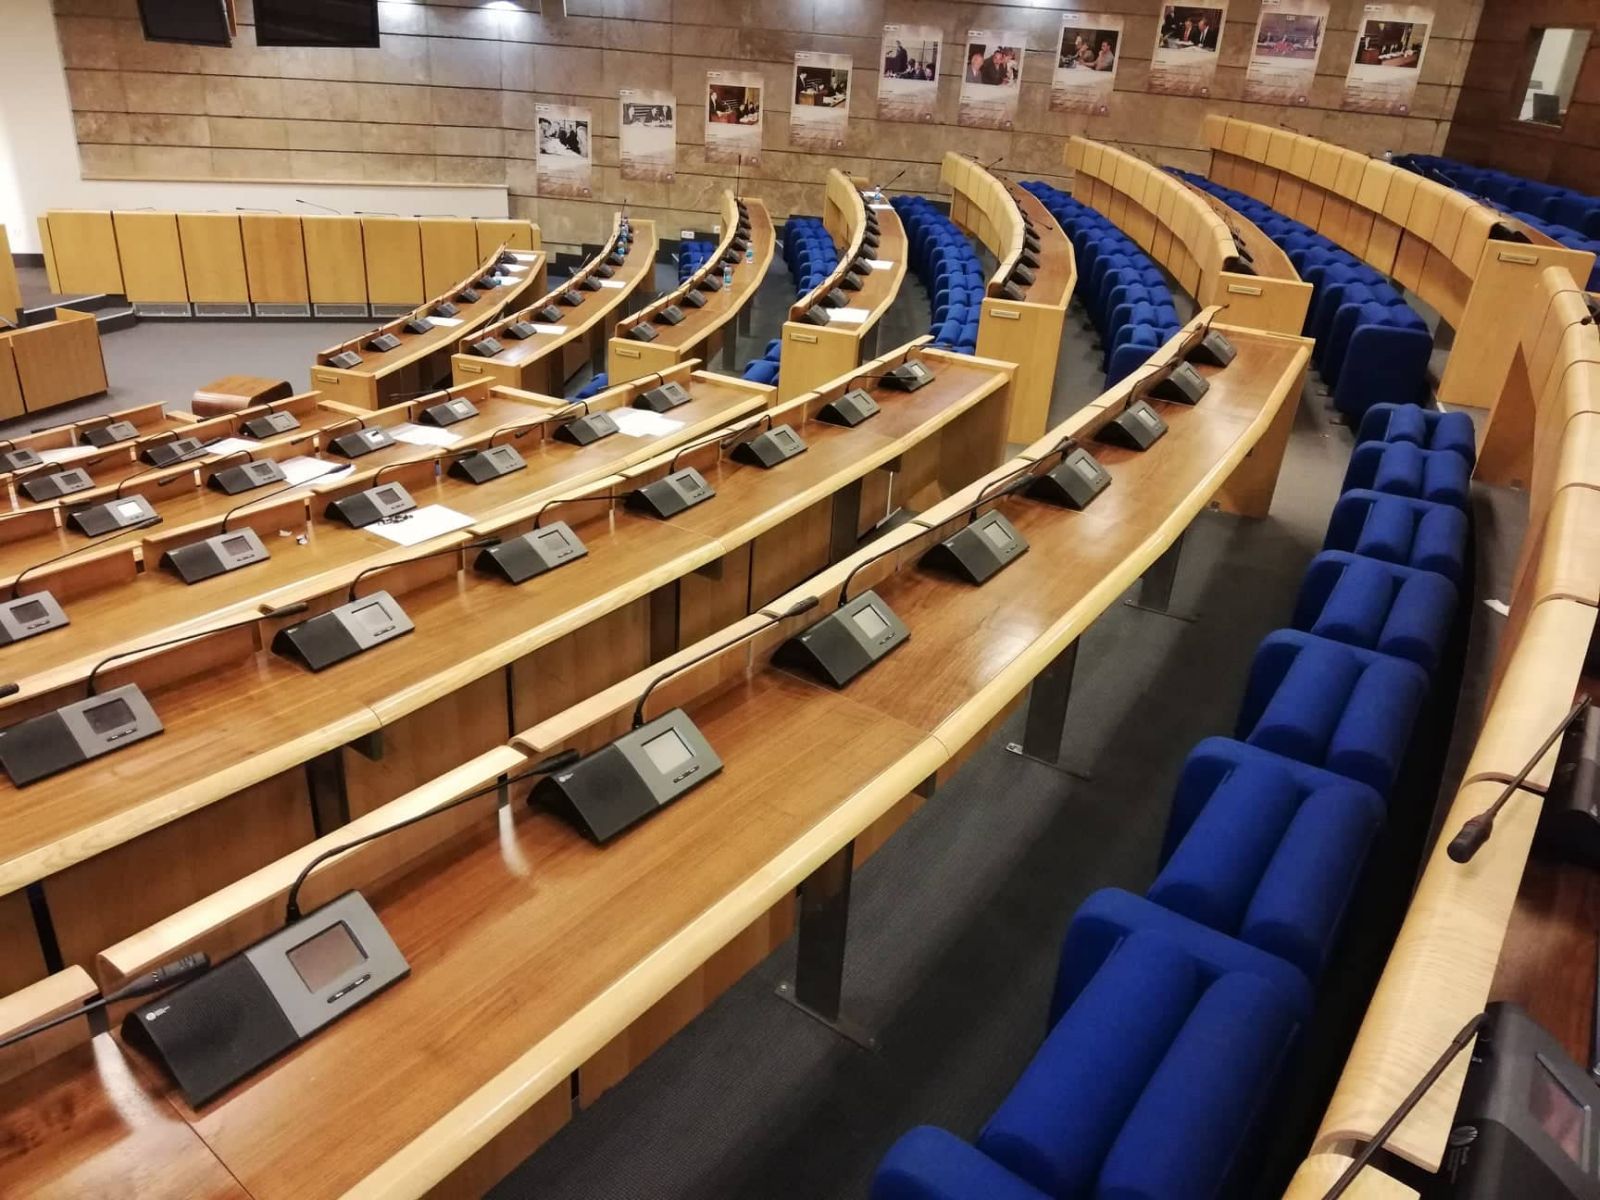 Konstituirajuća sjednica Doma naroda sala parlamenta prazna